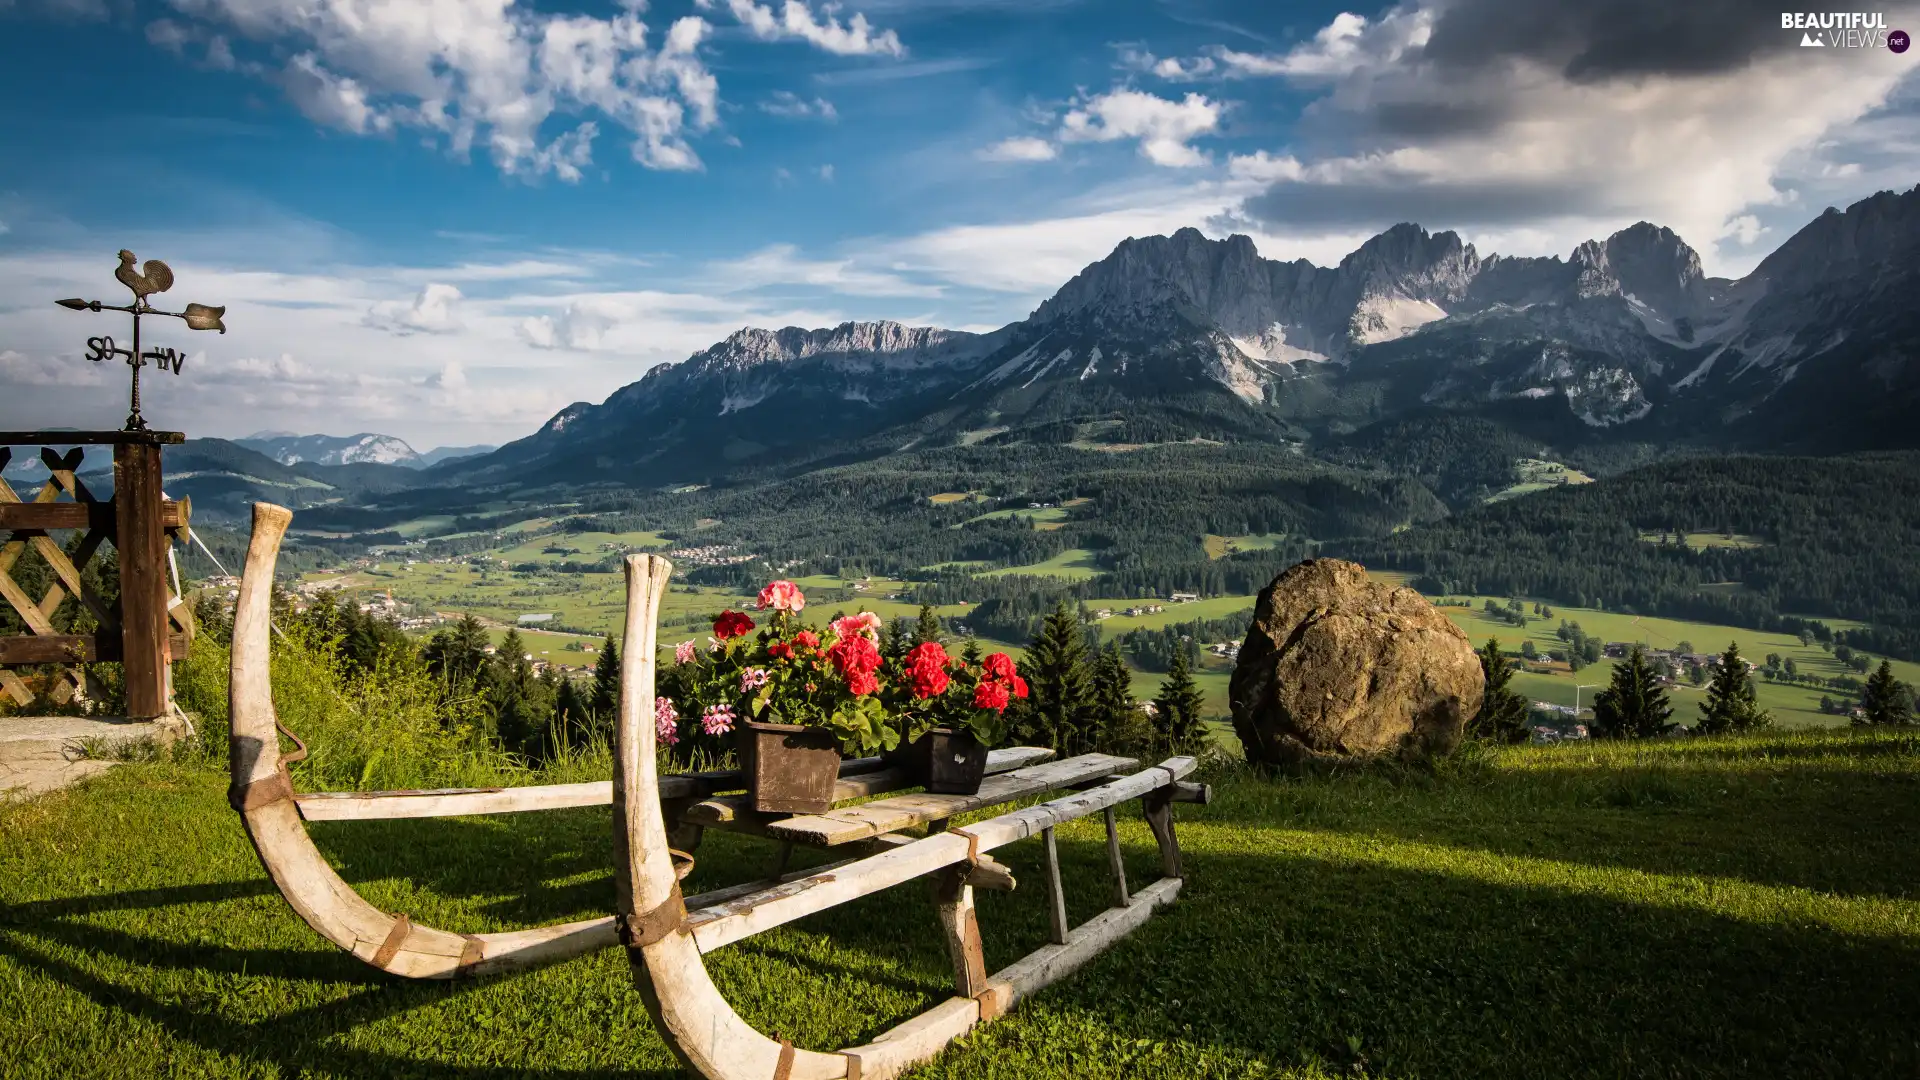 Mountains, geraniums, Tirol, Austria, Alps, sledge